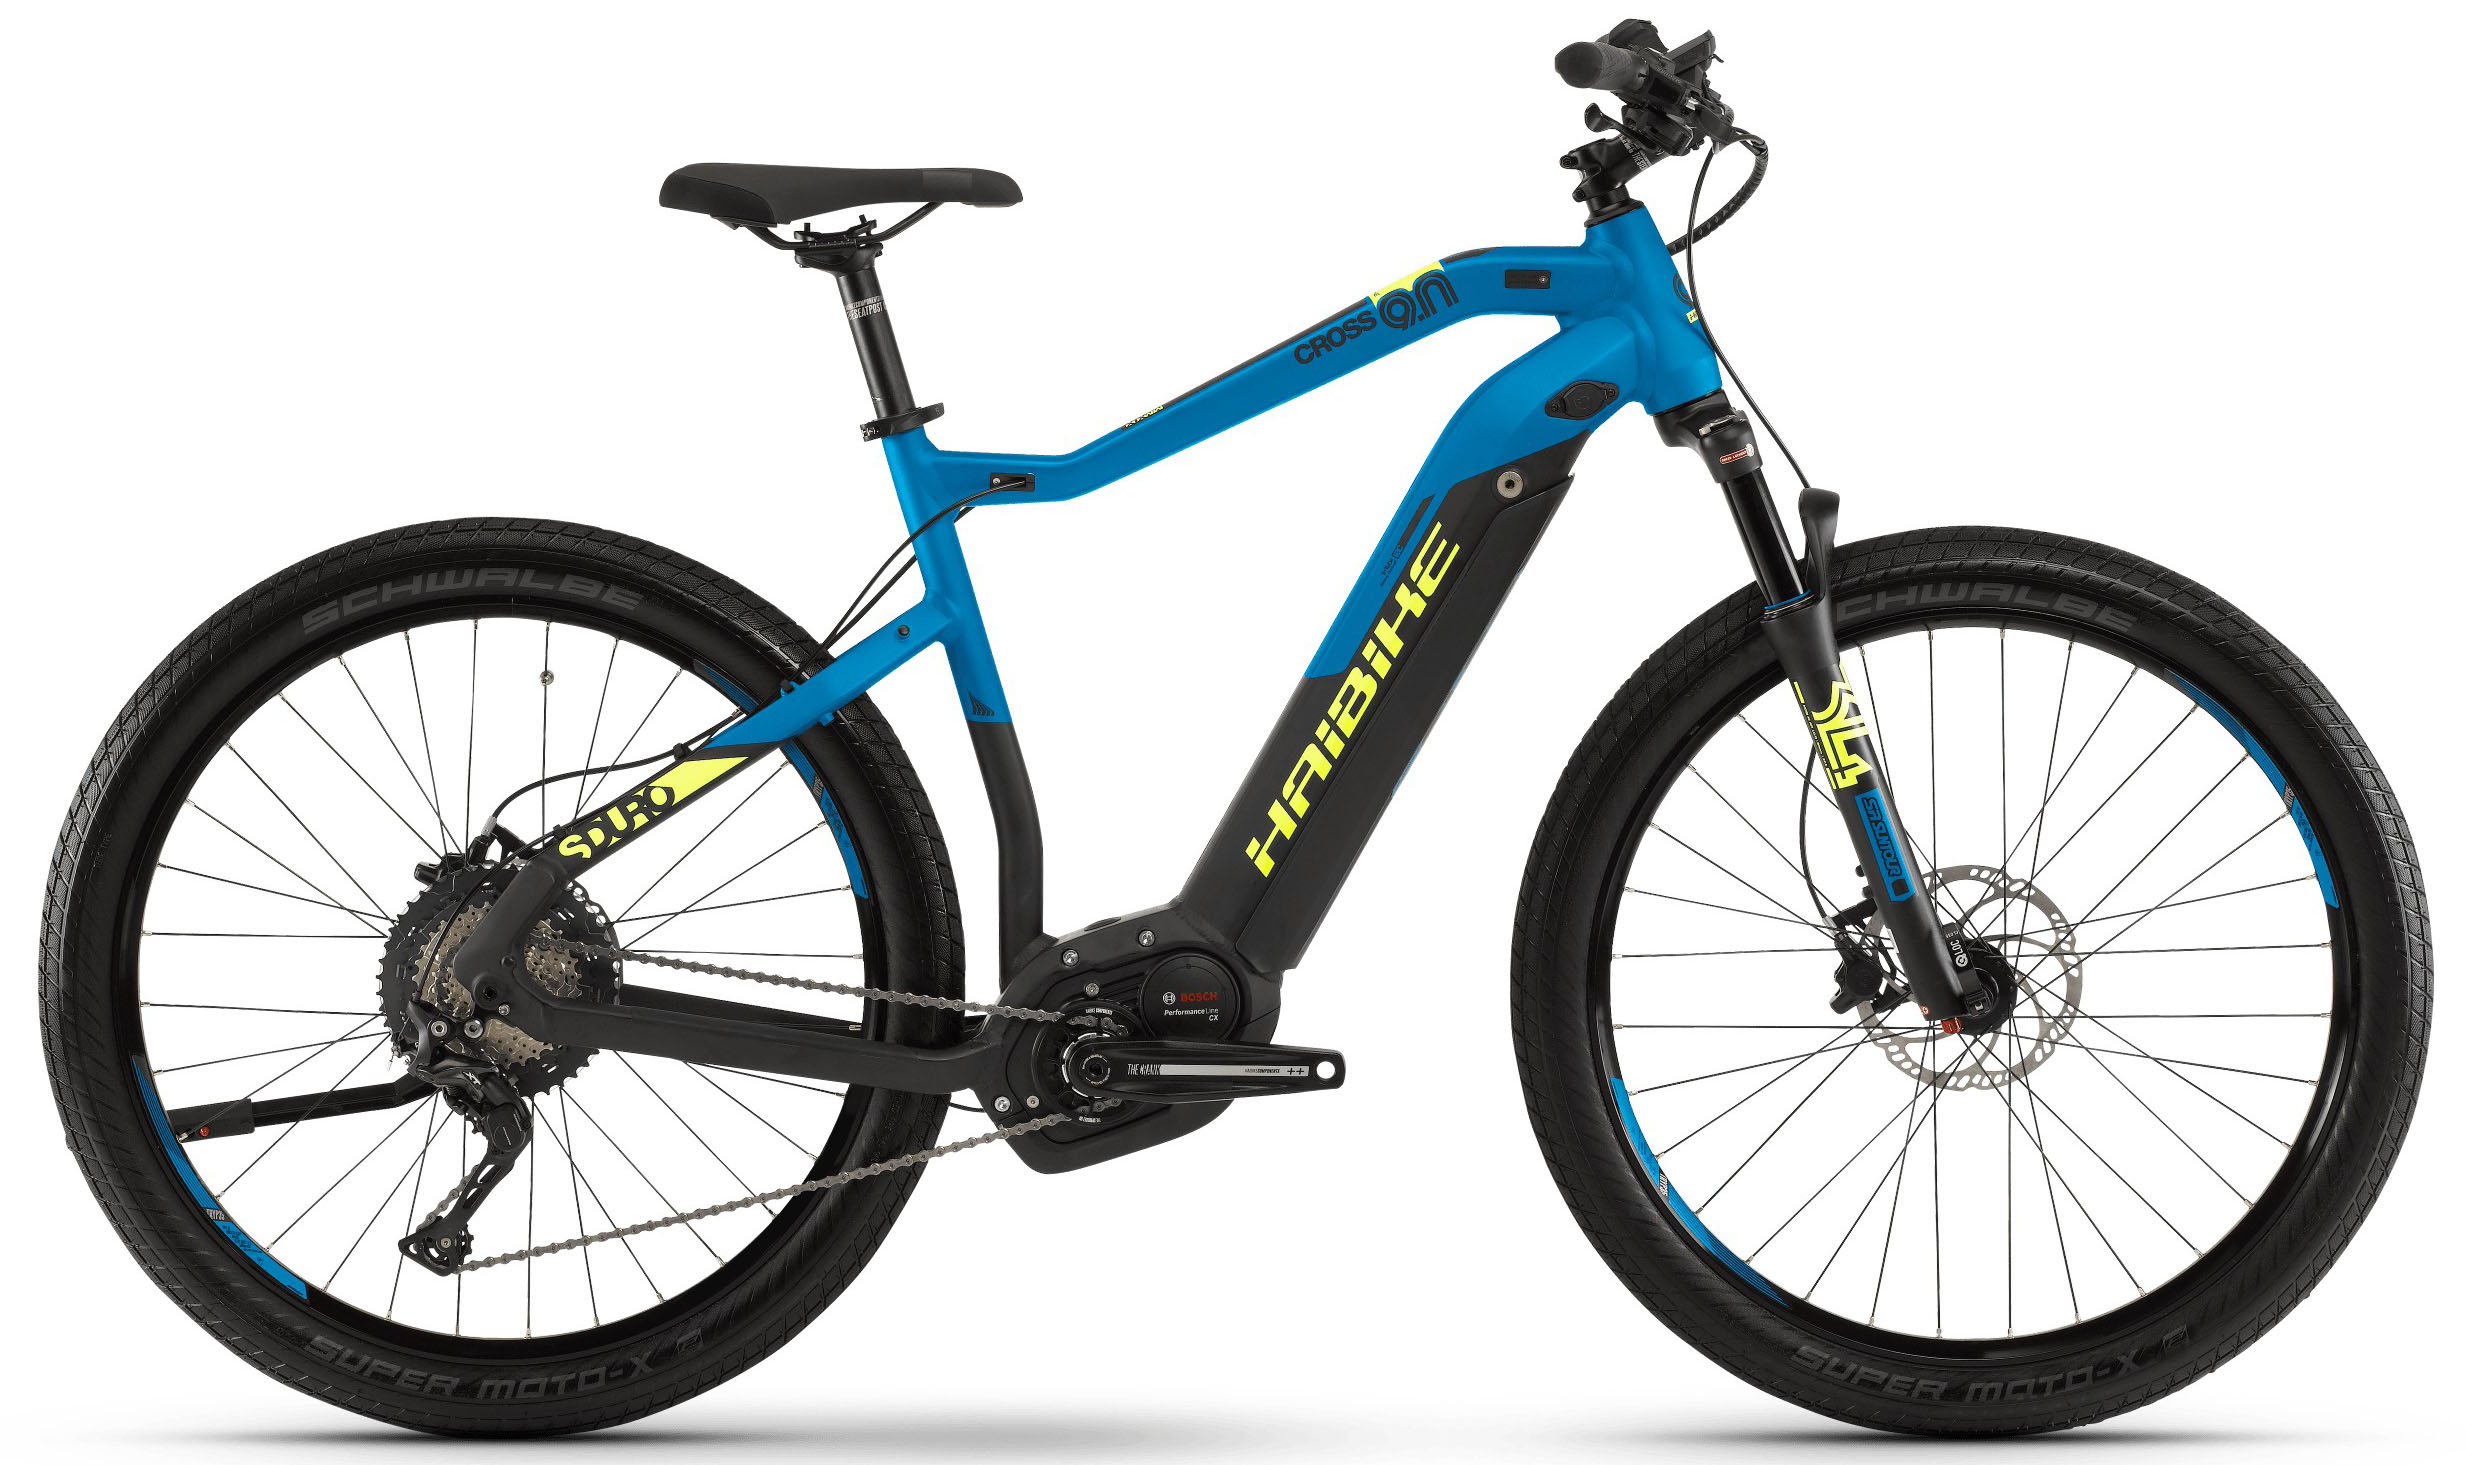  Отзывы о Электровелосипеде Haibike SDURO Cross 9.0 Herren i500Wh 11-G XT 2019